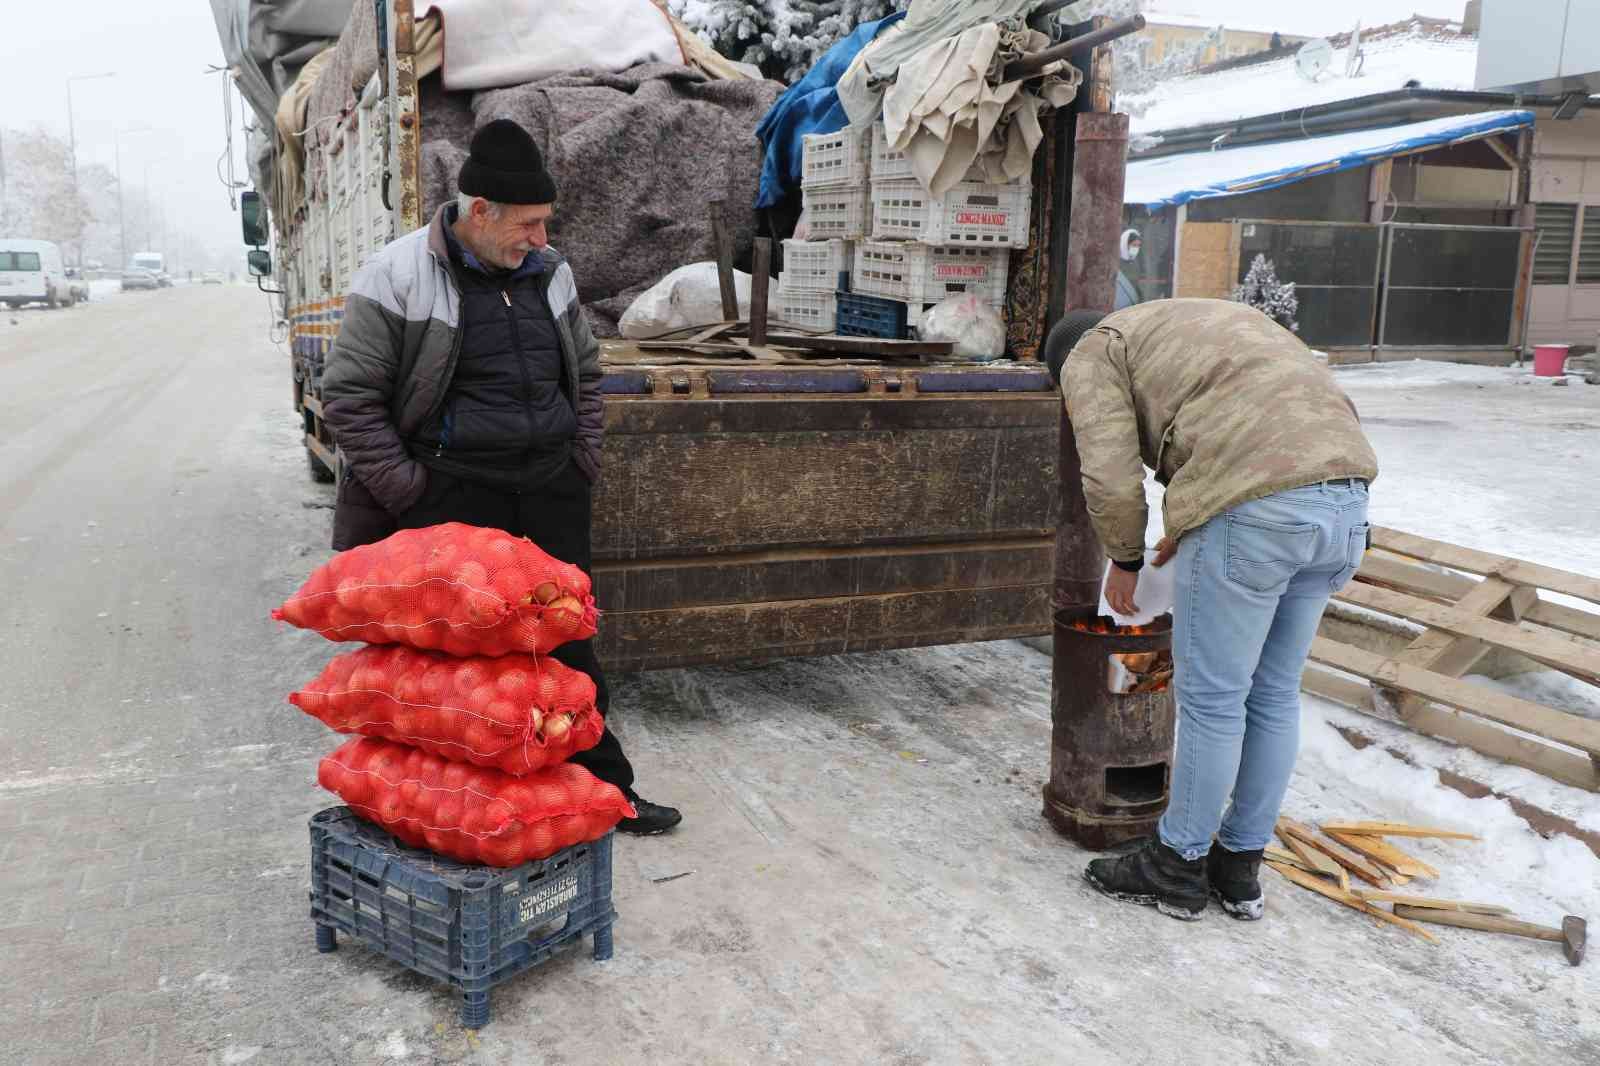 Doğu Anadolu buz kesti, pazarcılar soğuktan korunmak için soba kurdu #erzincan